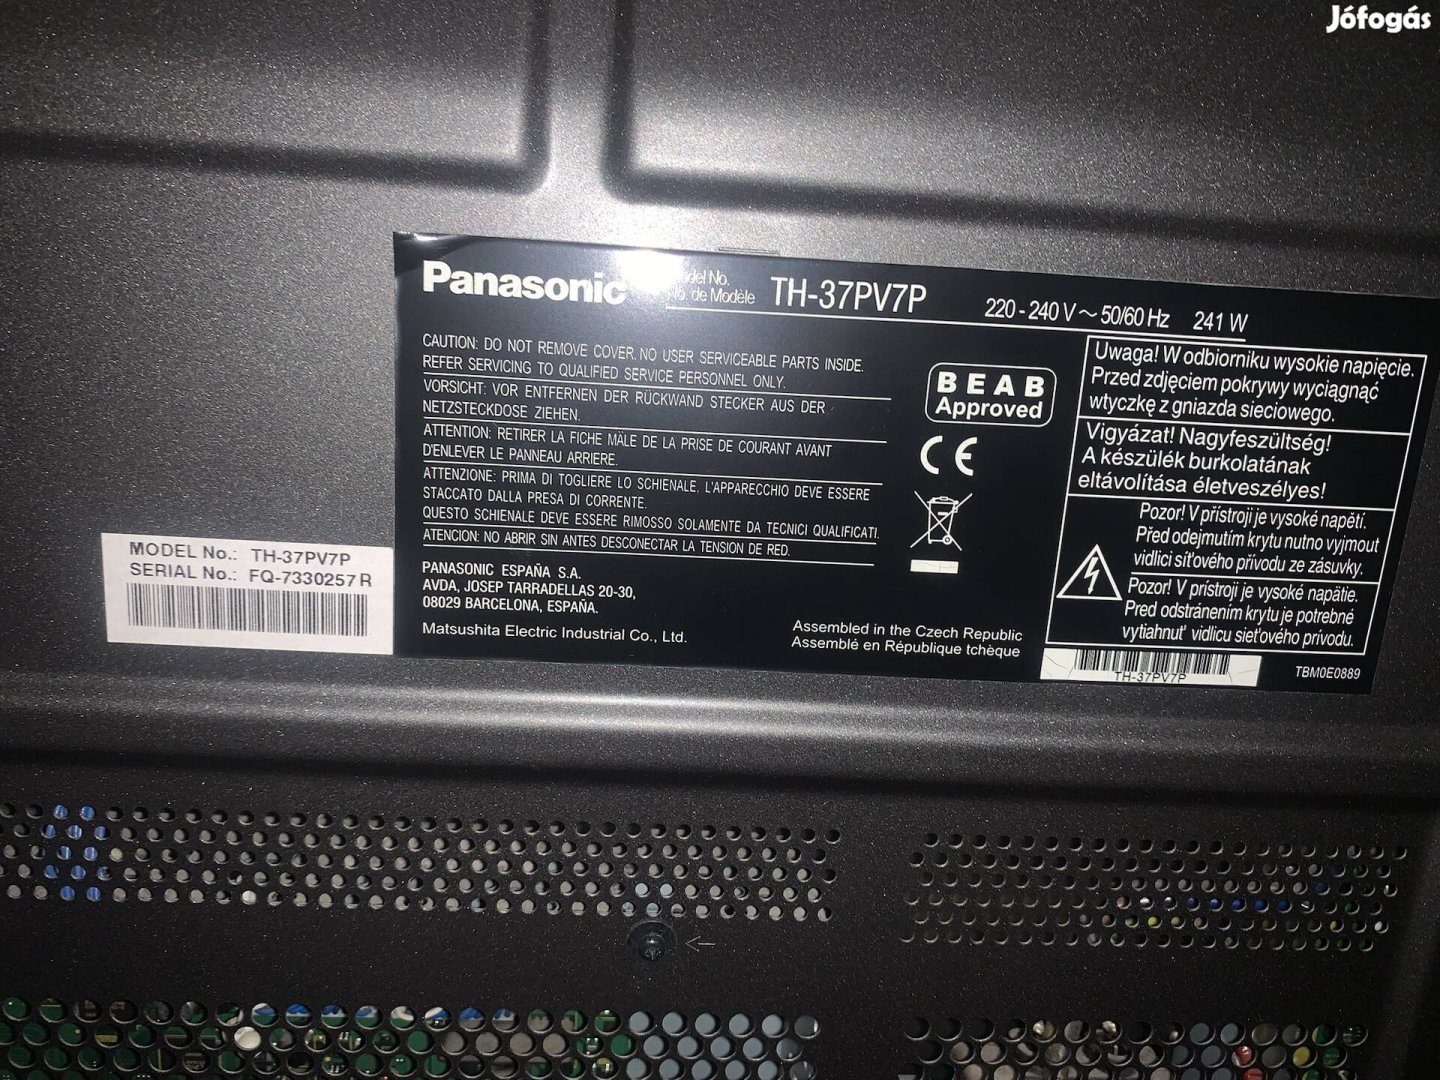 Panasonic viera TH-37PV7P plazma tv